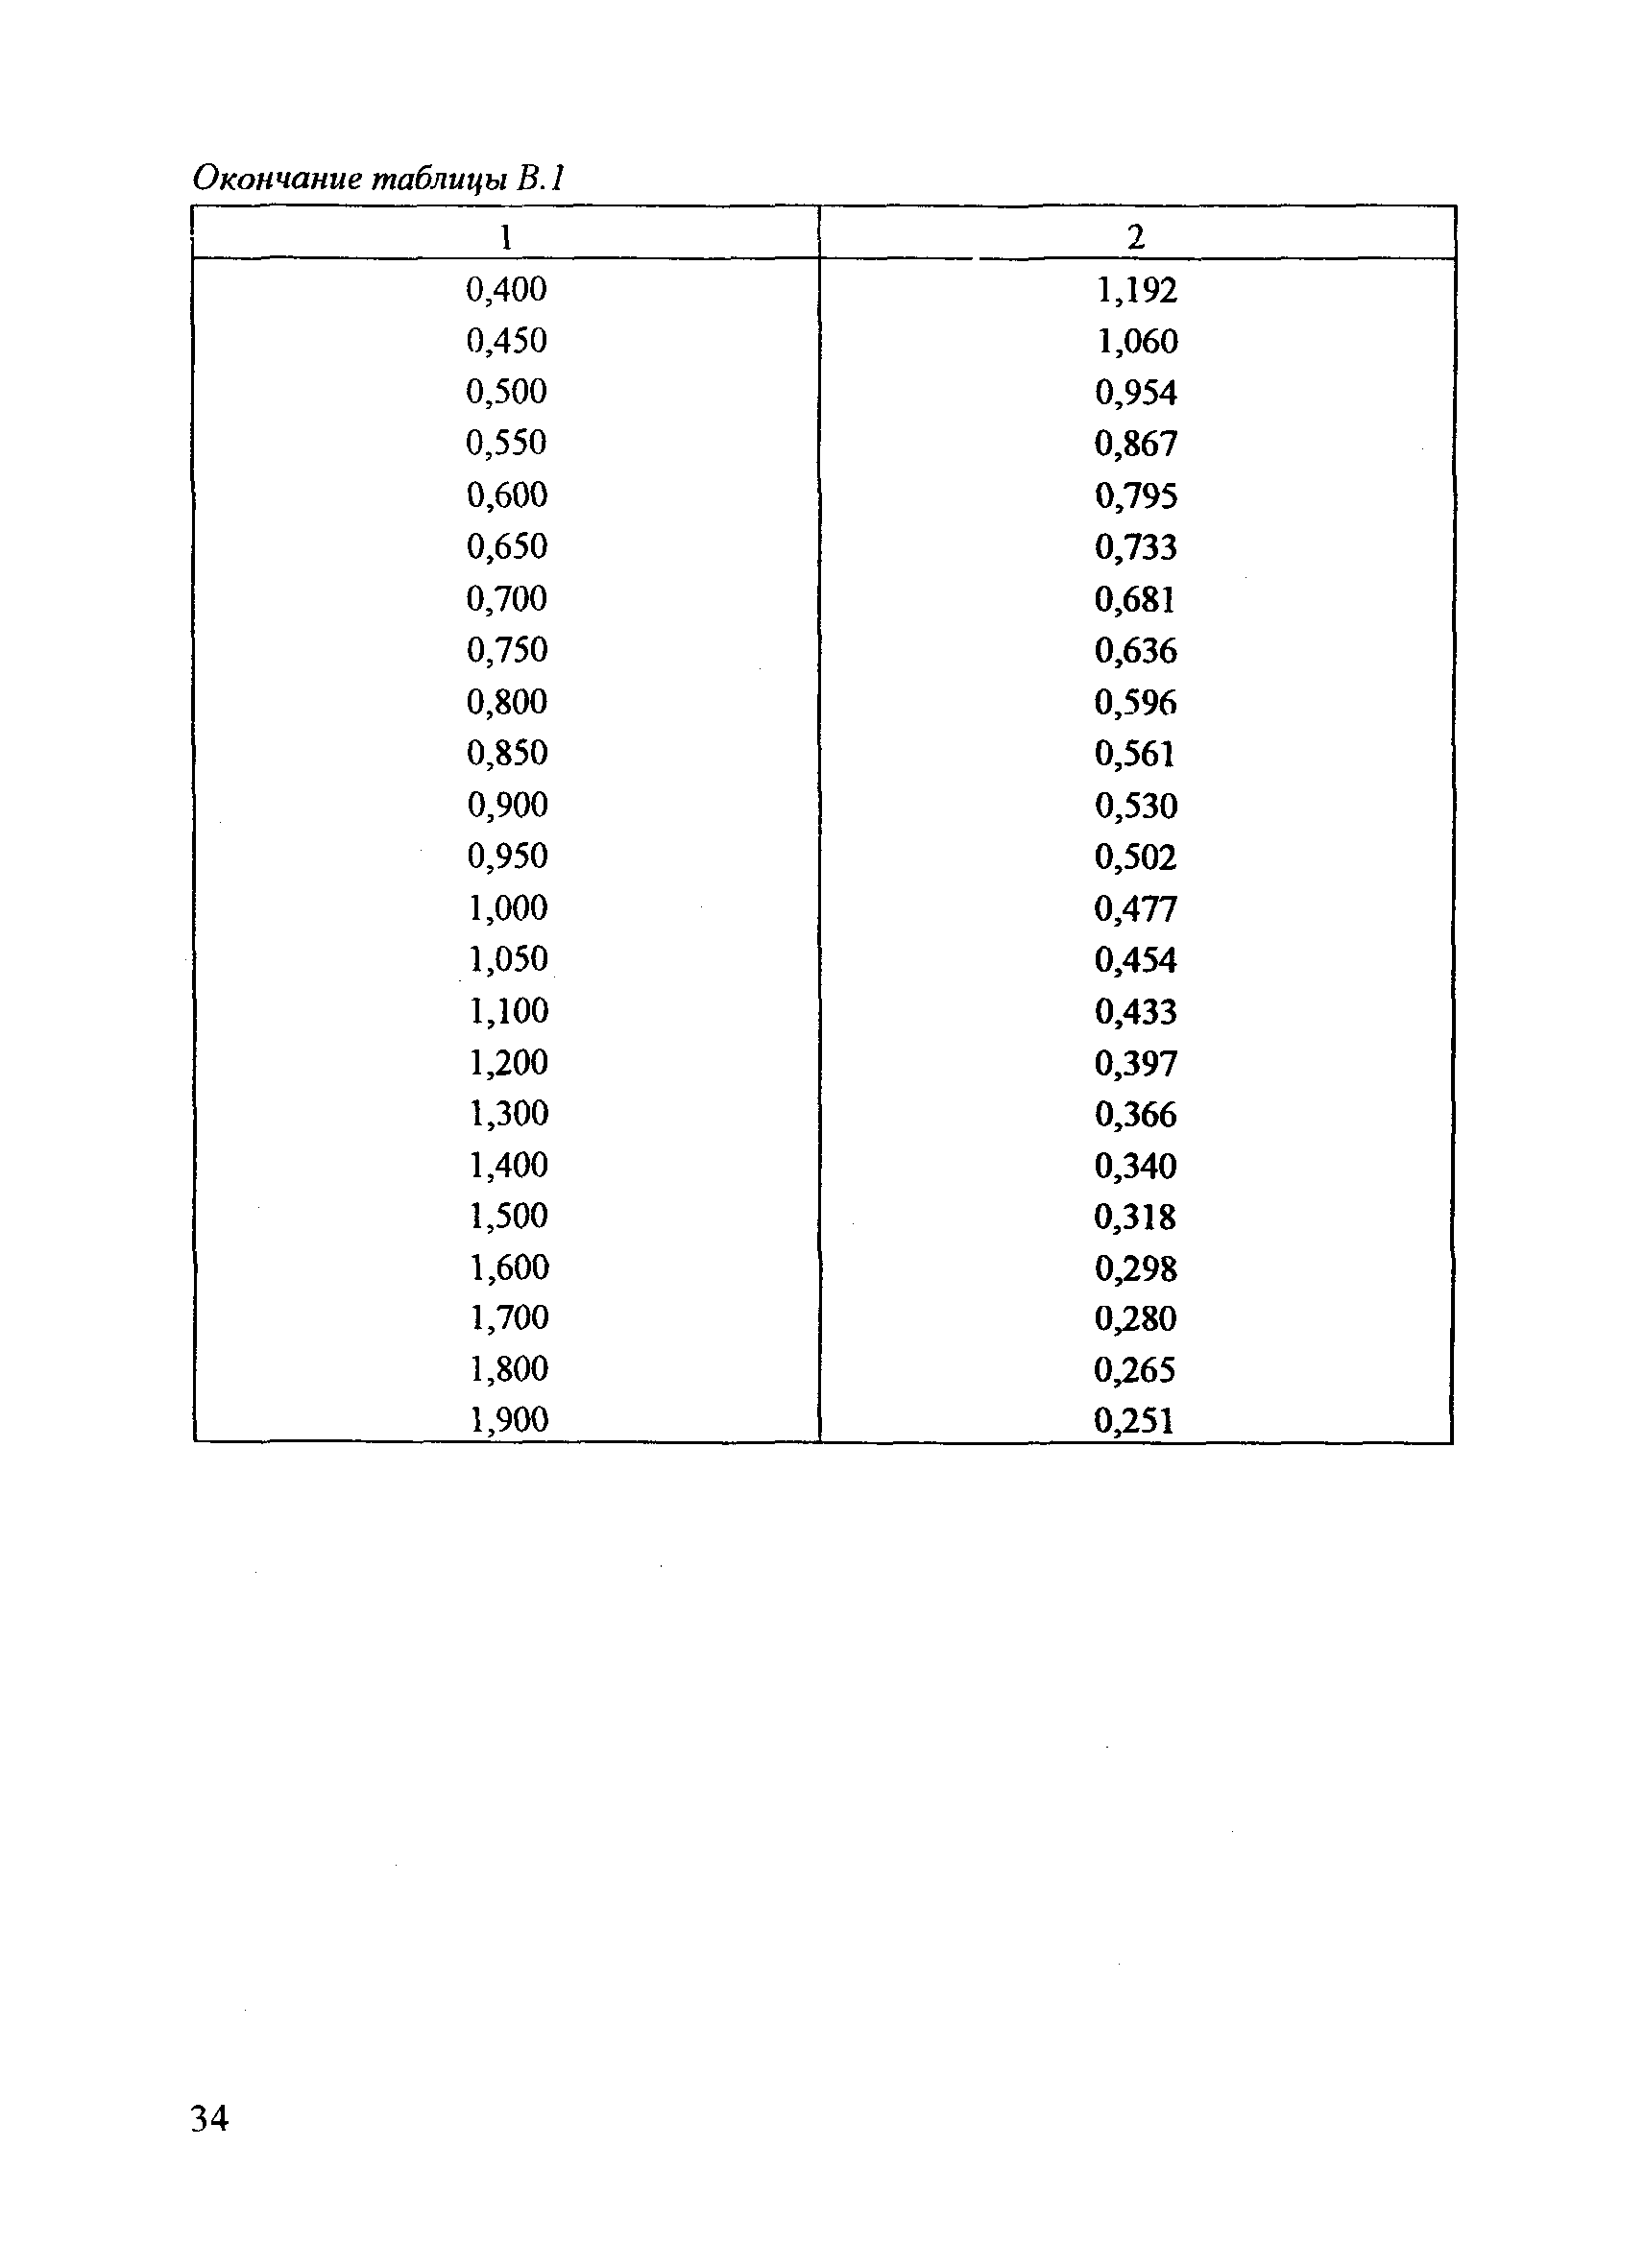 РД 153-34.0-37.411-2001